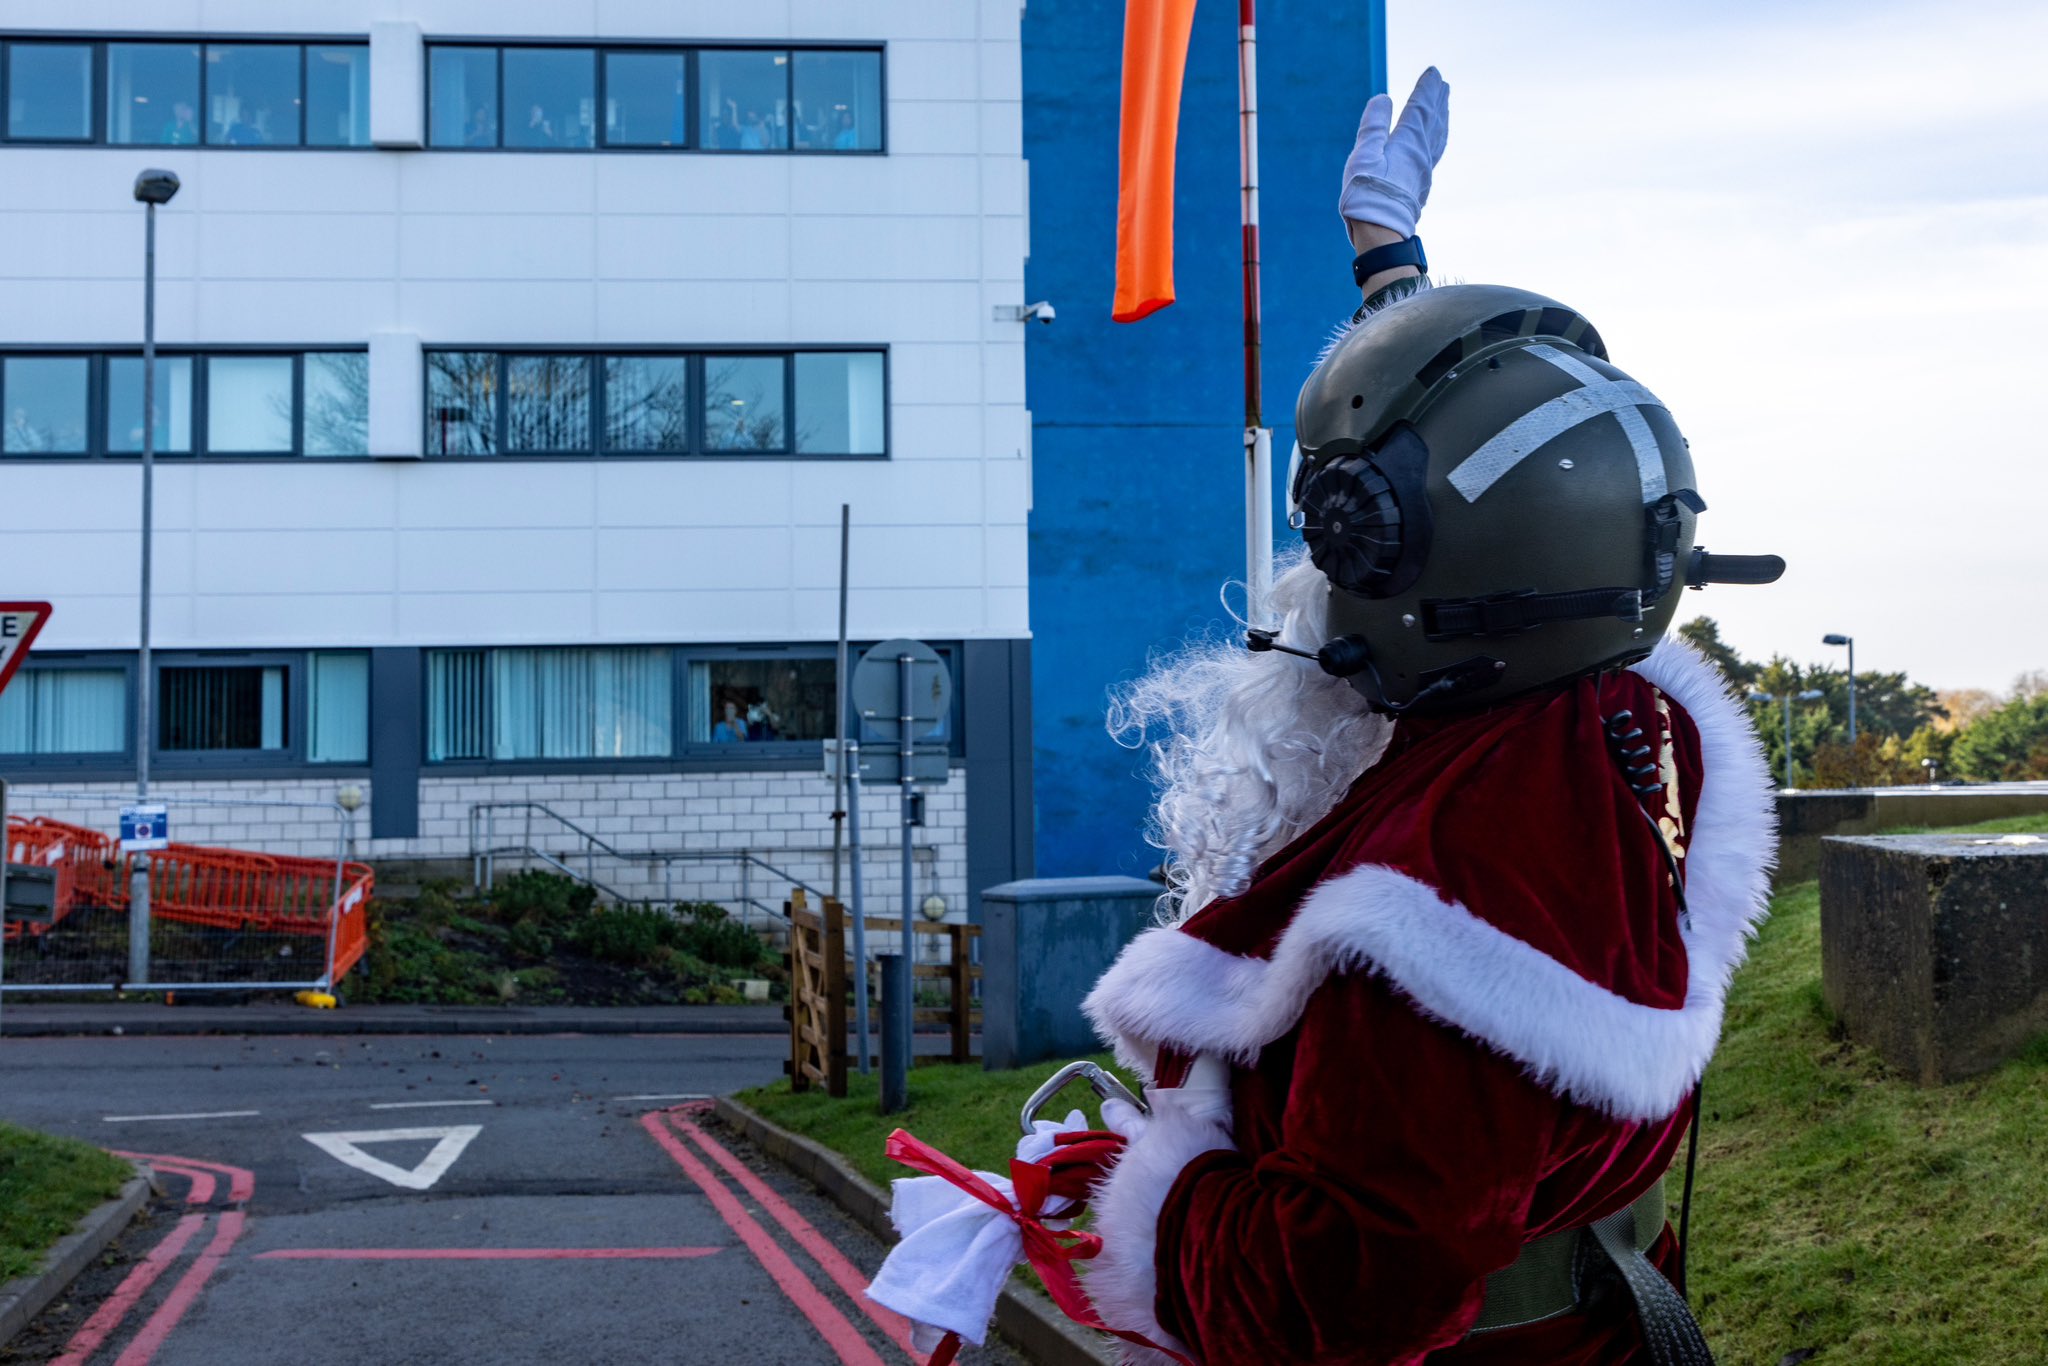 Santa waving at the hospital